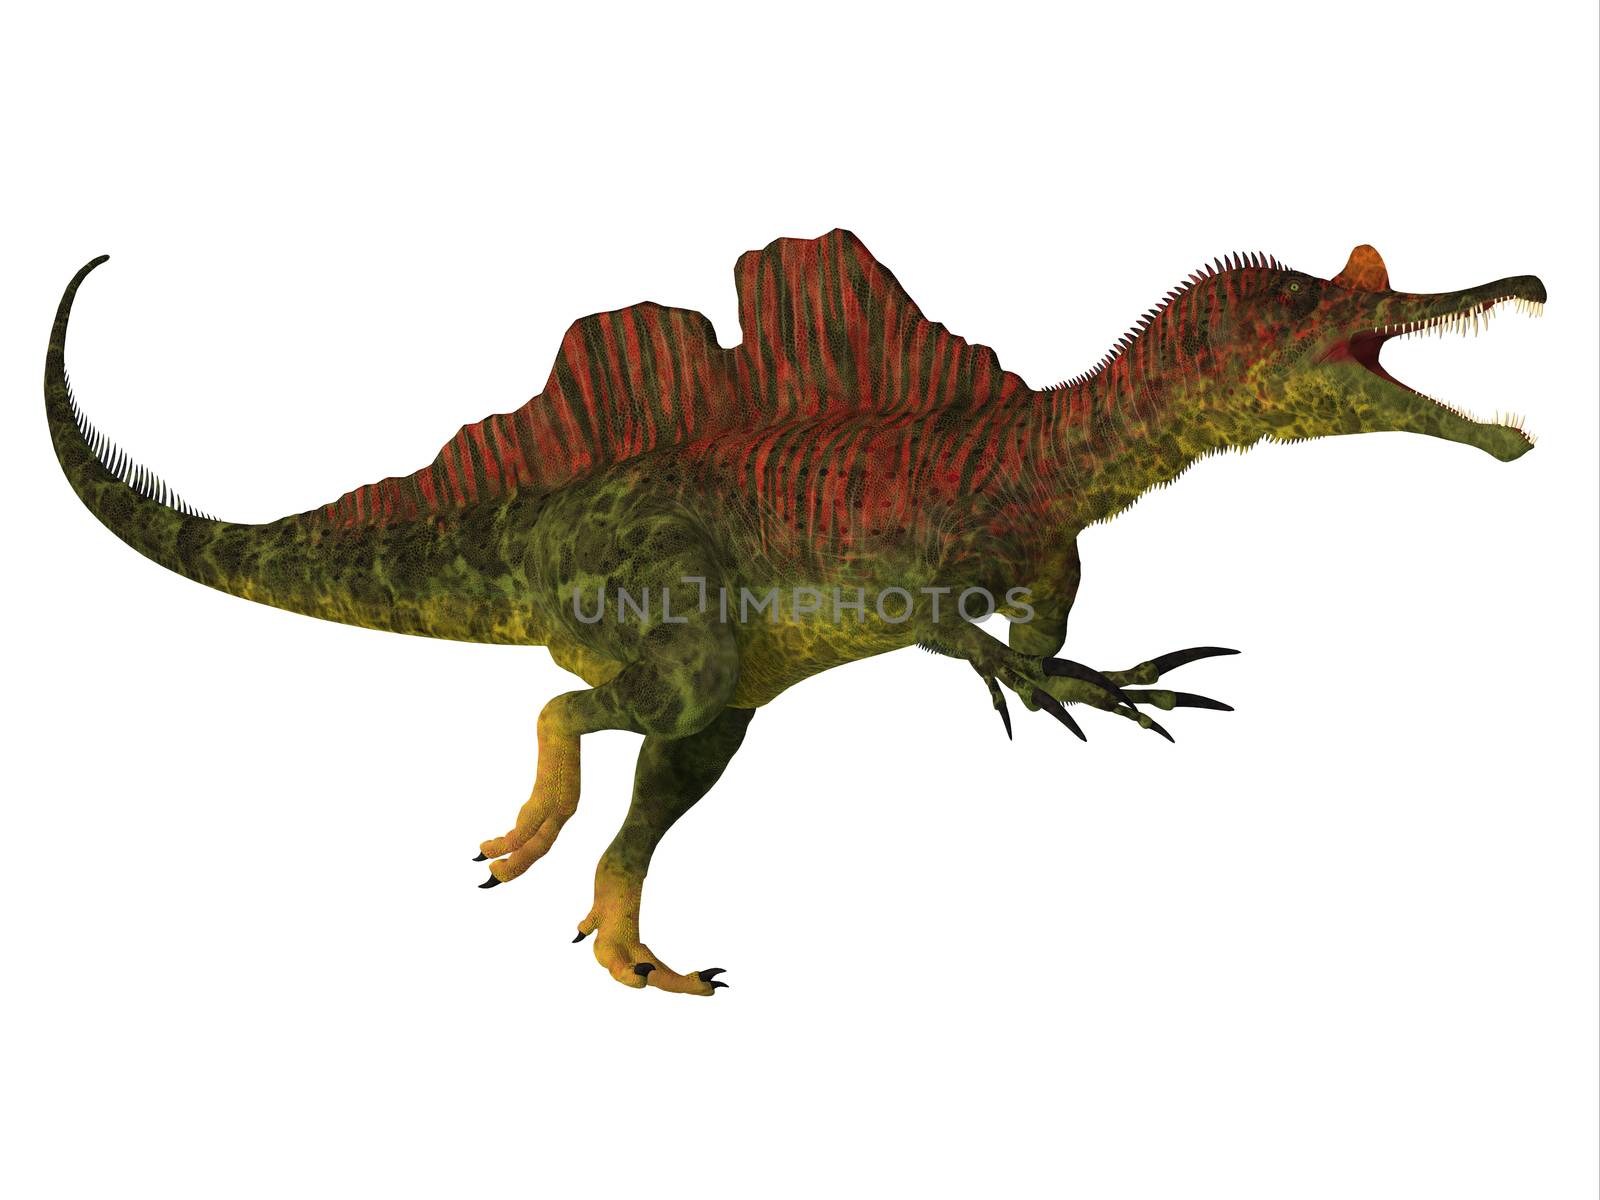 Ichthyovenator Dinosaur Body by Catmando